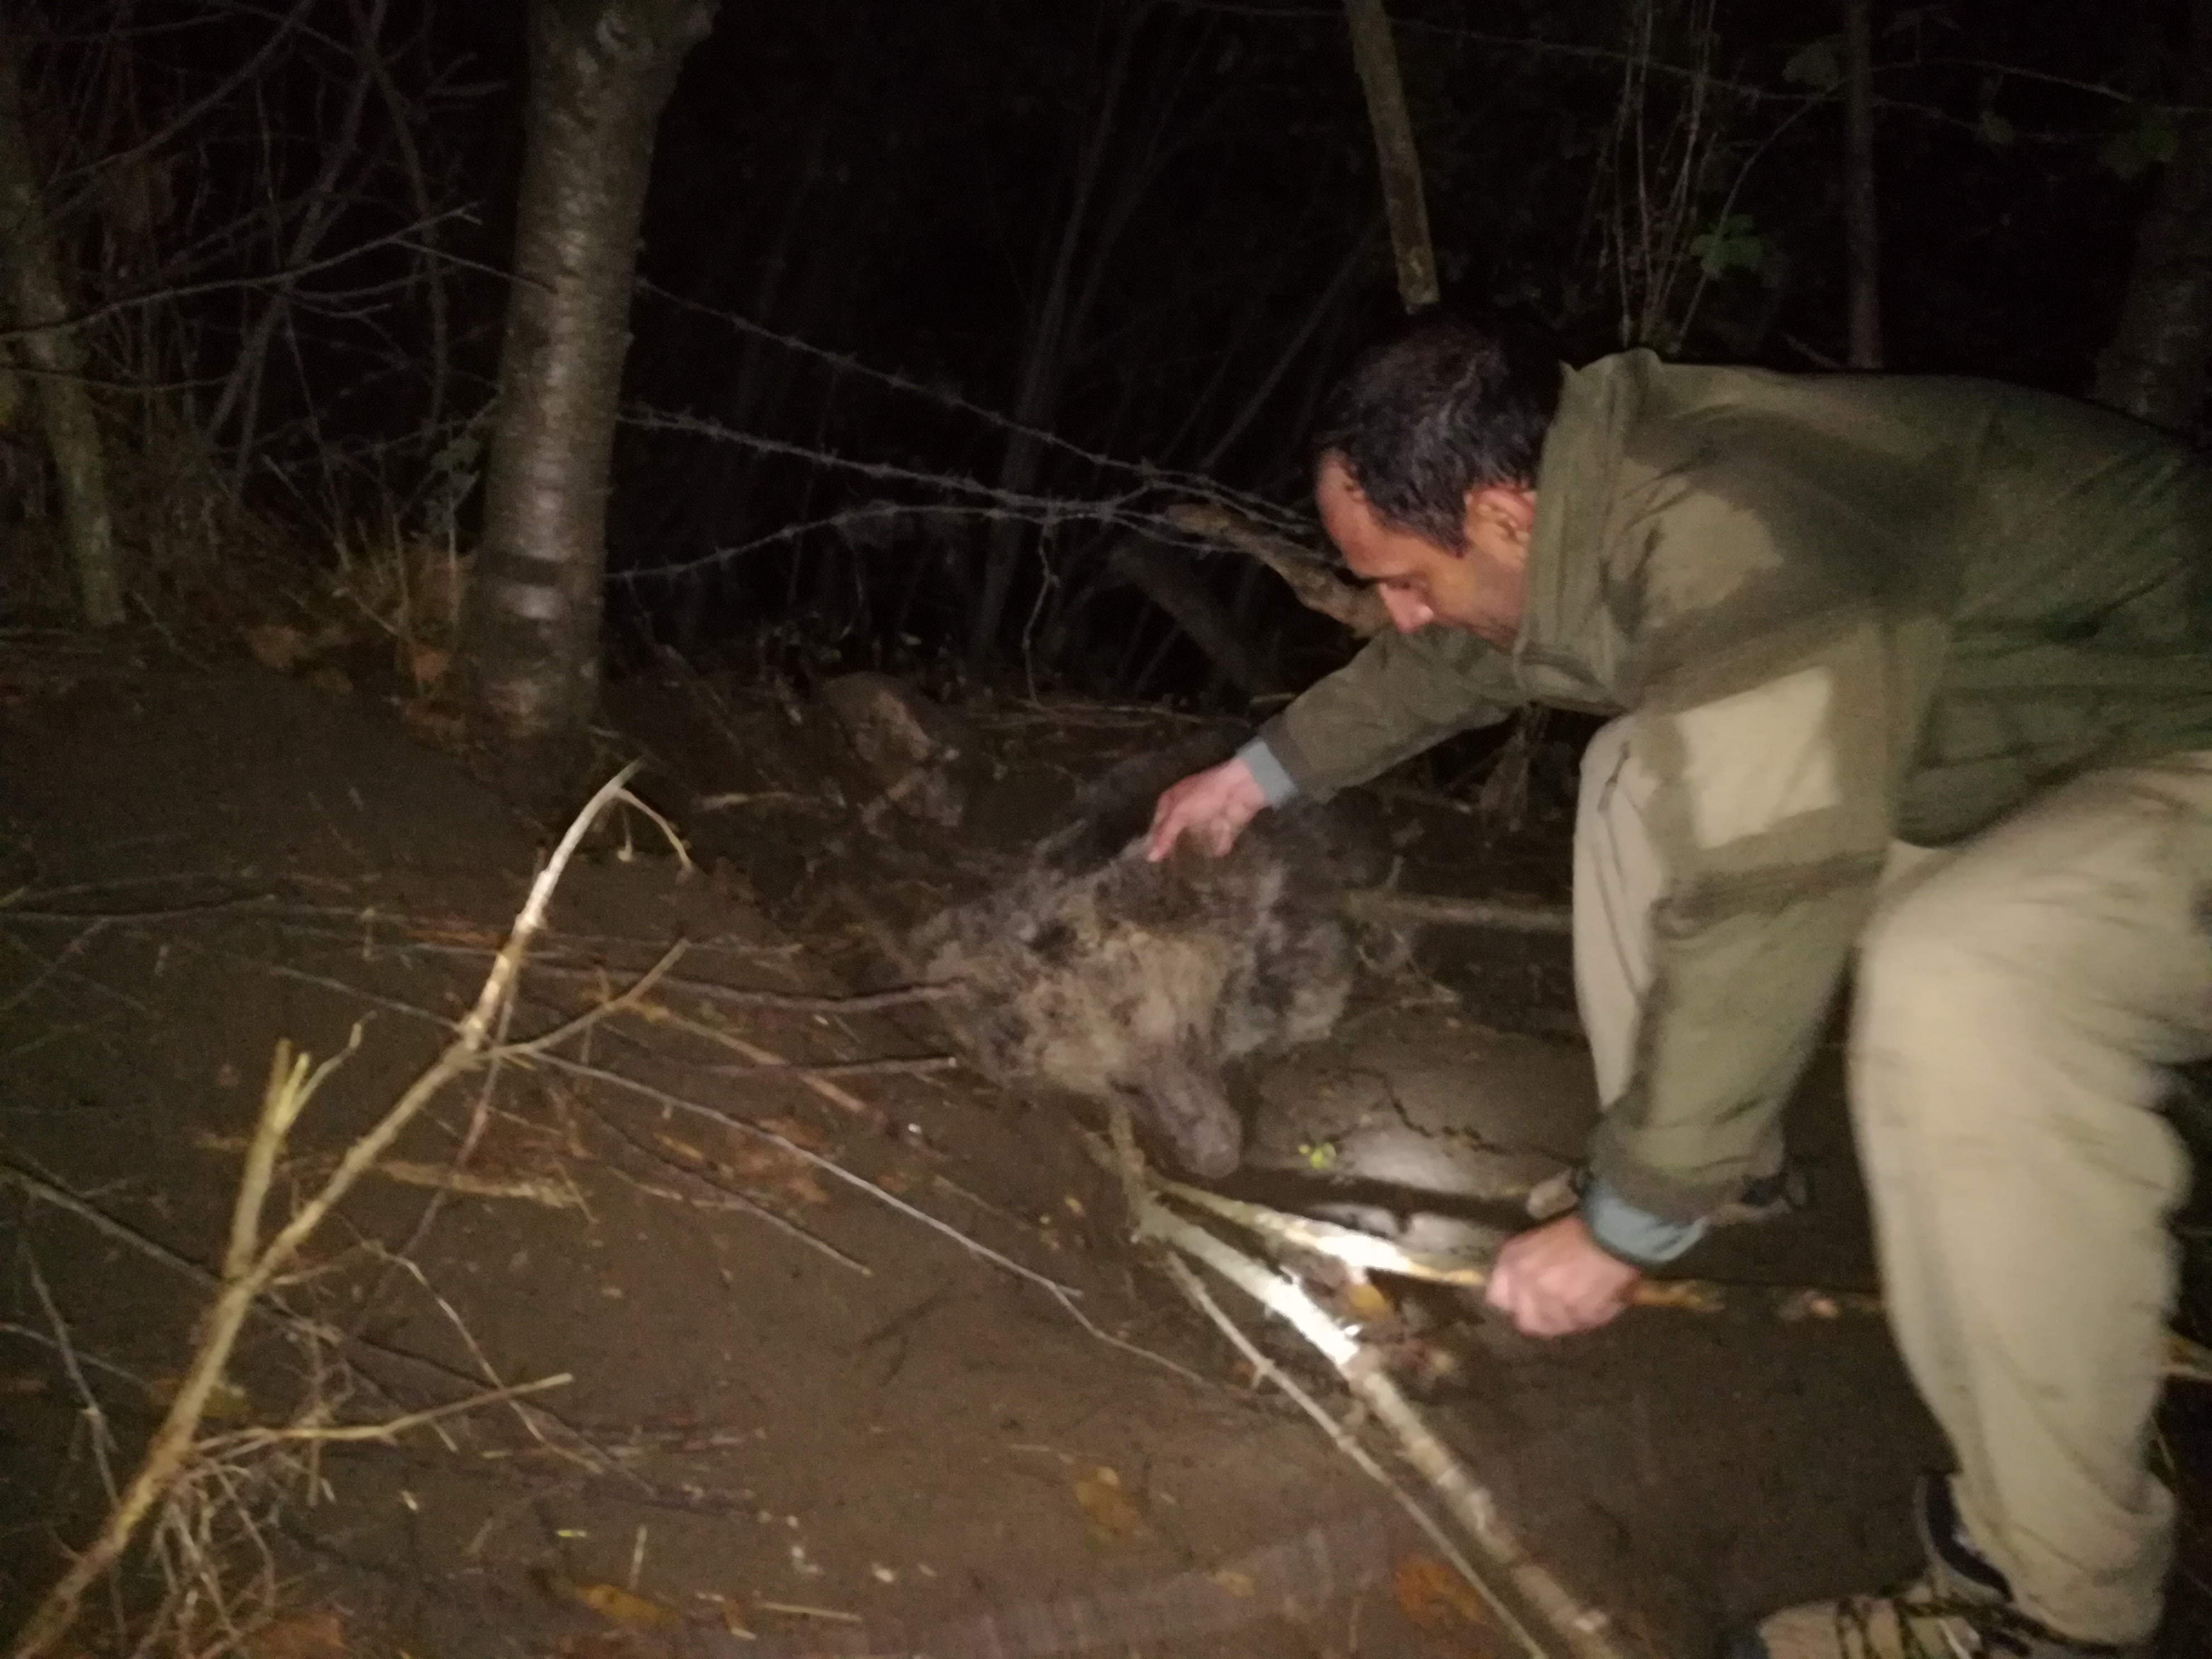 تلاش پنج ساعته برای رهاسازی خرس گرفتار در کلیبر/ هر گونه تله گذاری برای حیات وحش جرم است